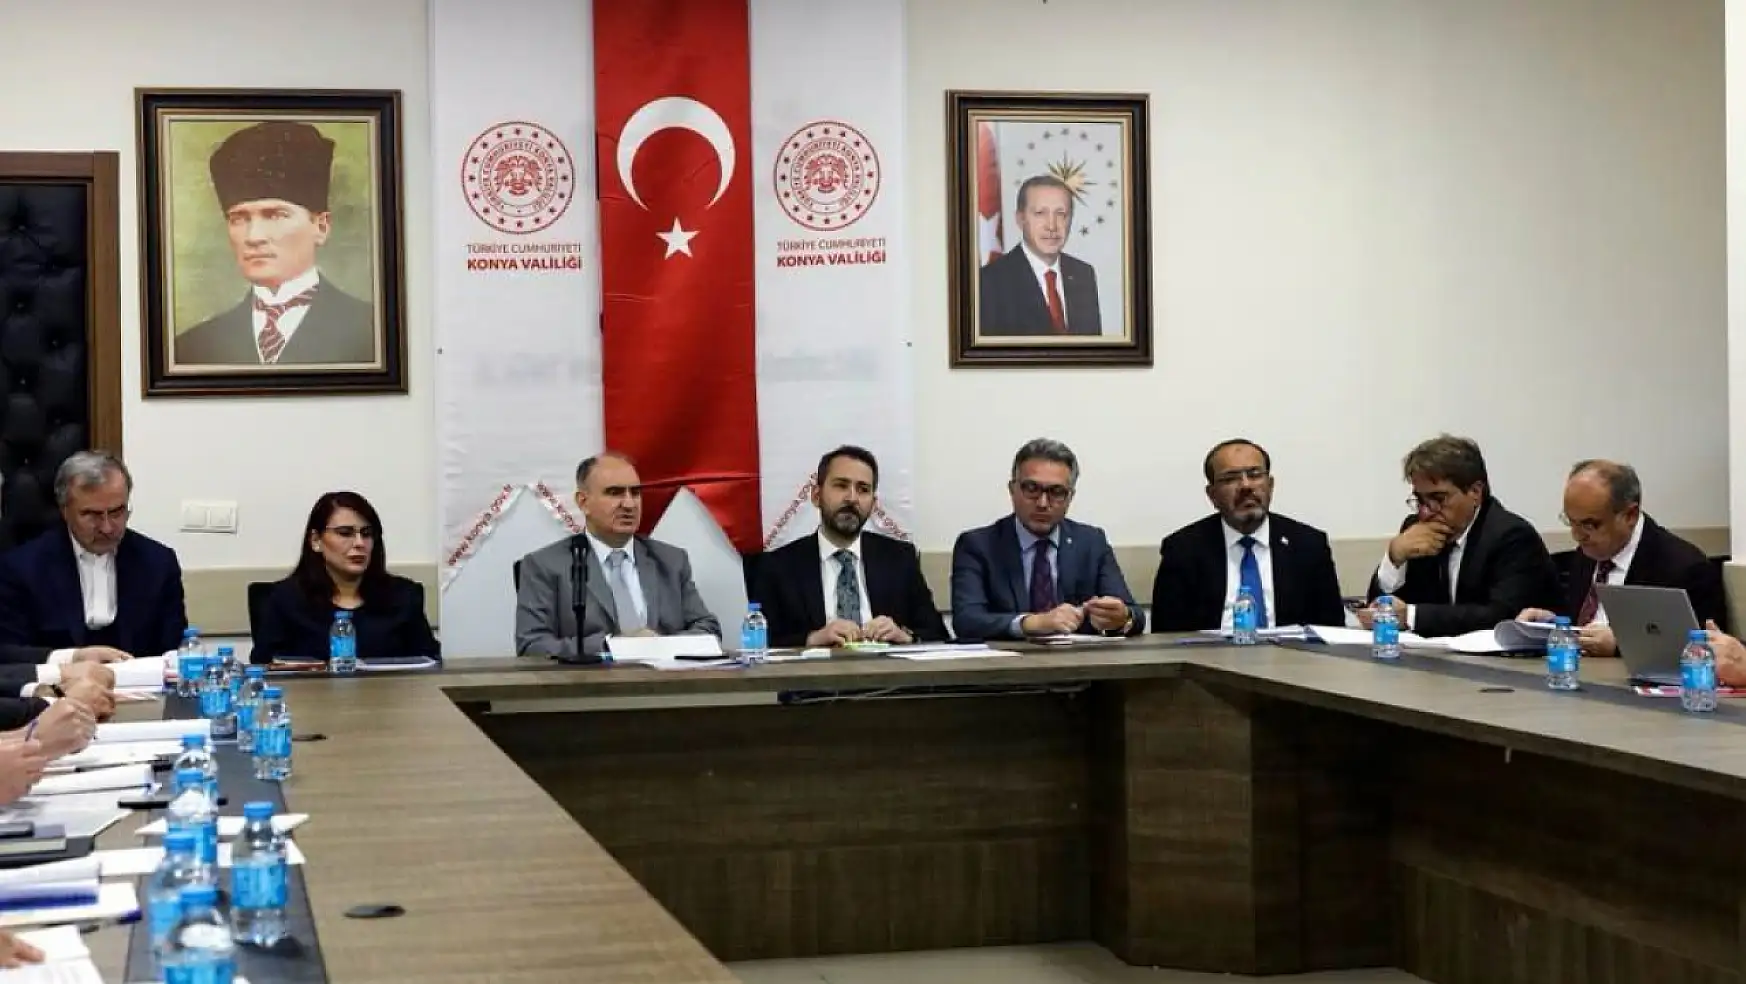 Konya SANTEK toplantısı Vali Özkan Başkanlığında yapıldı: Konya sanayisine yönelik konular tartışıldı!